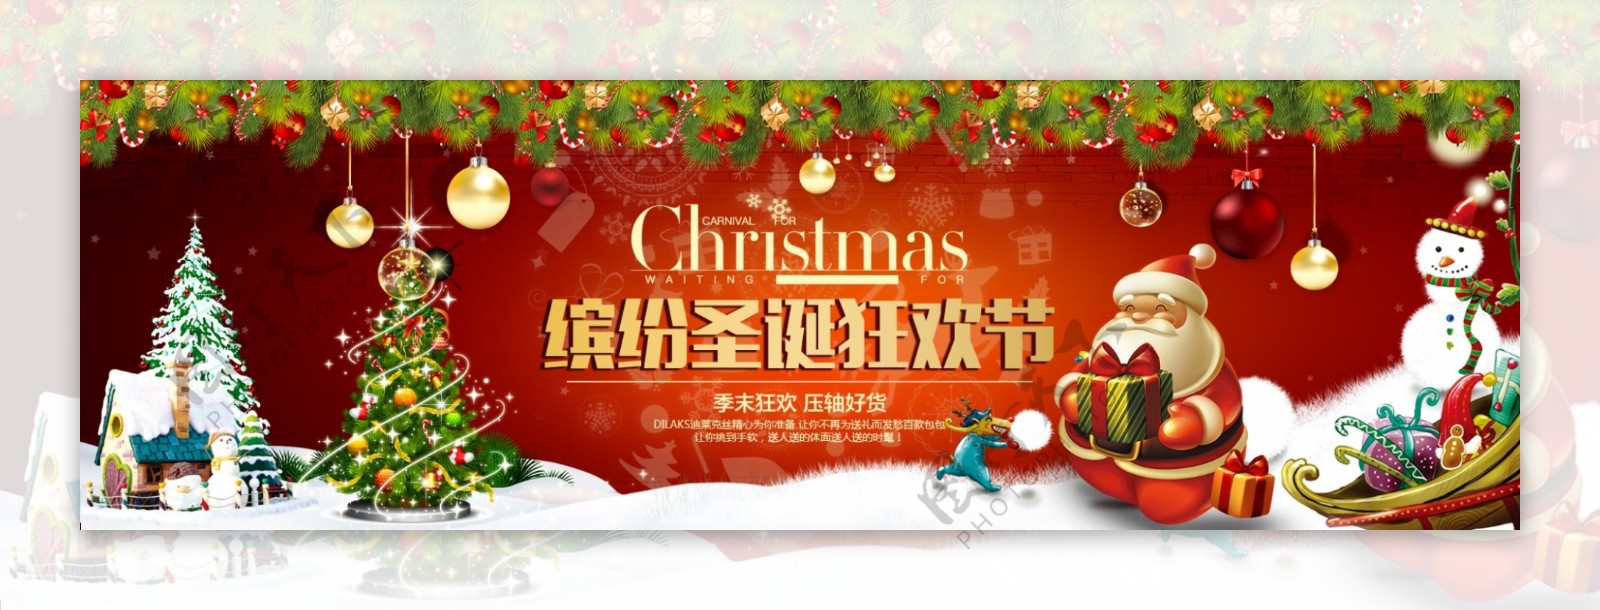 天猫淘宝京东圣诞节平安夜元旦促销海报模板